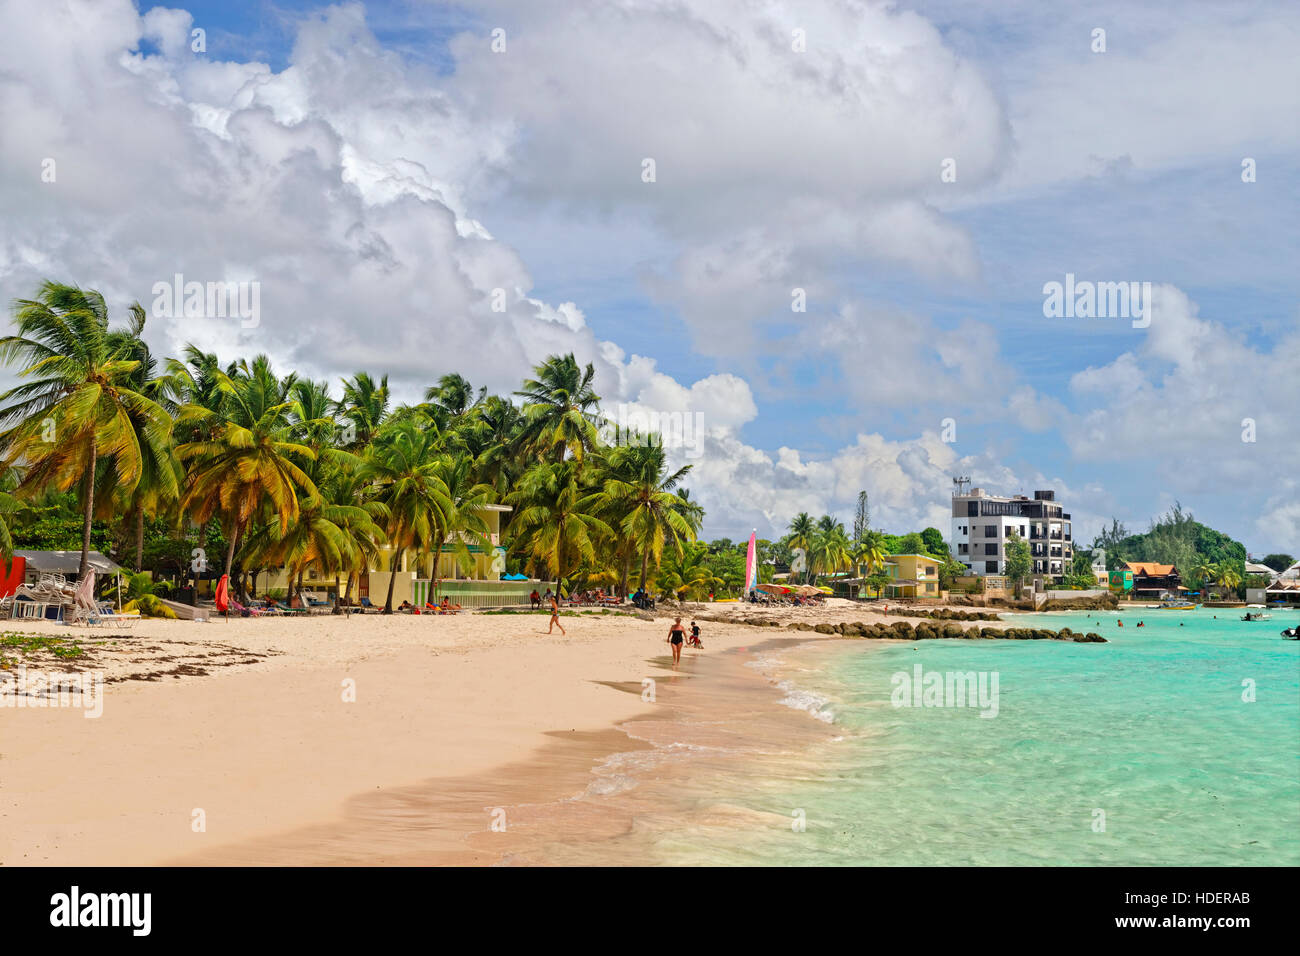 Worthing Beach à Worthing, entre St Lawrence Gap et de Bridgetown, La Barbade, la côte sud, des Caraïbes. Banque D'Images